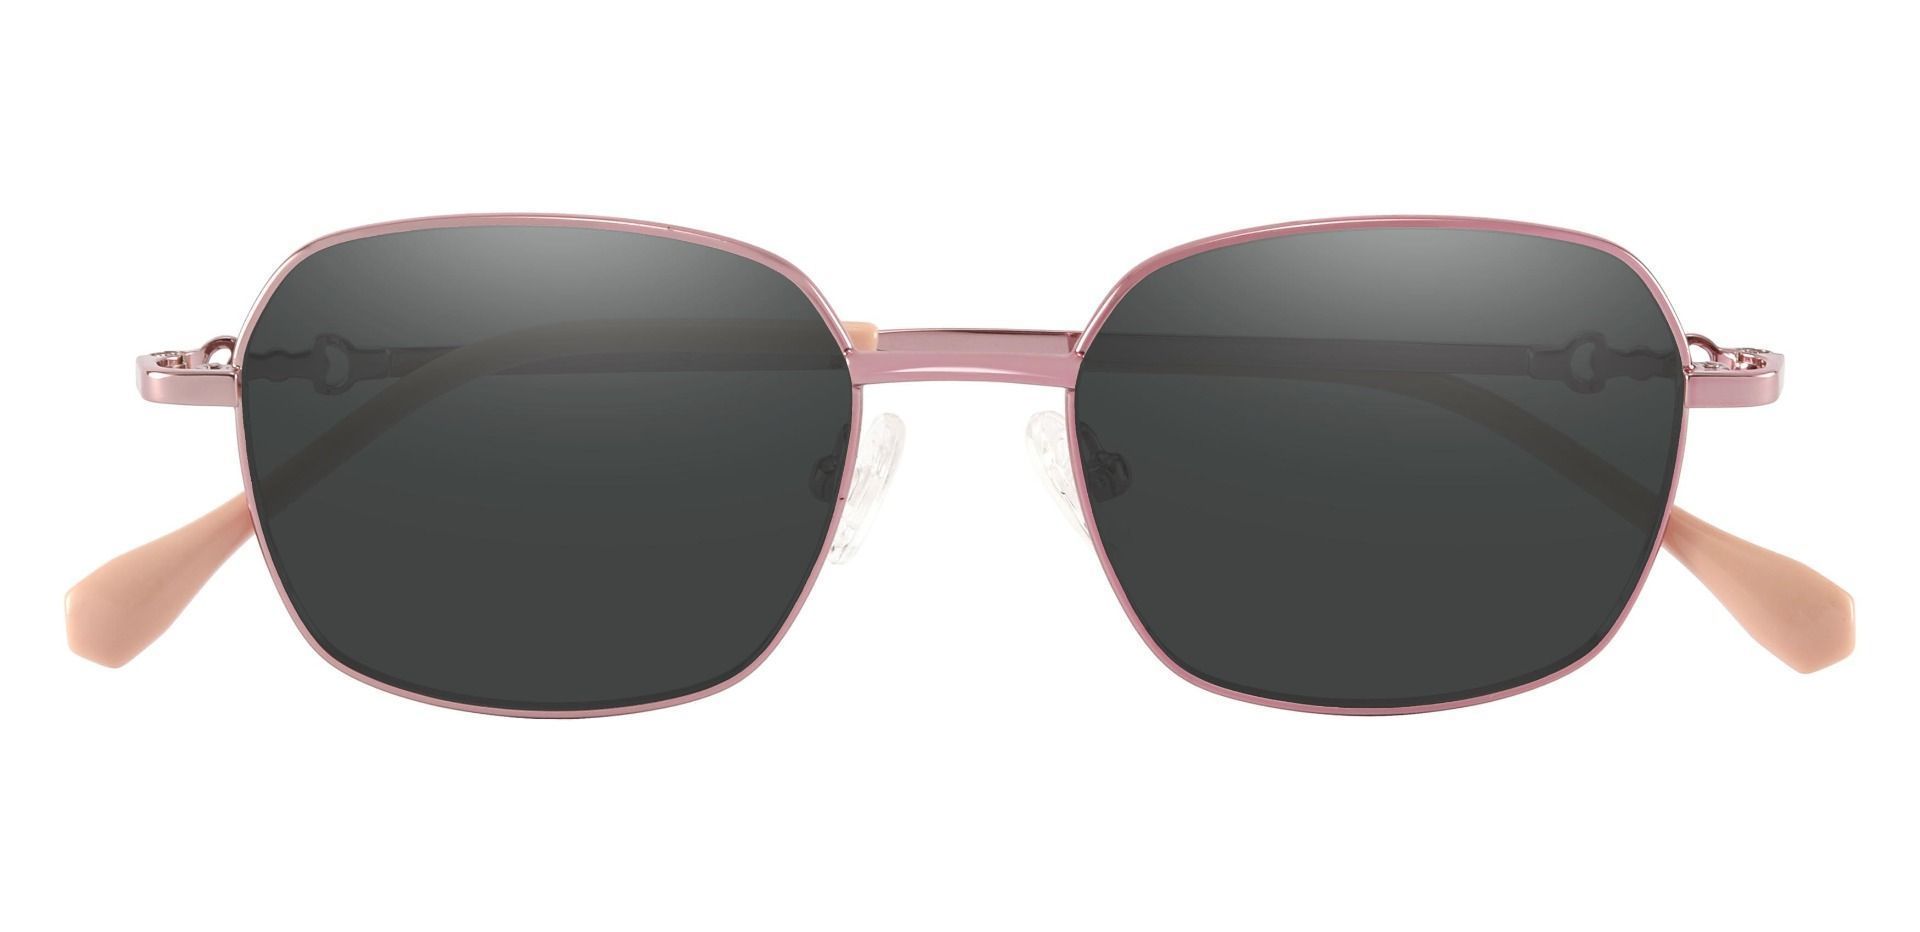 Averill Geometric Progressive Sunglasses - Rose Gold Frame With Gray Lenses